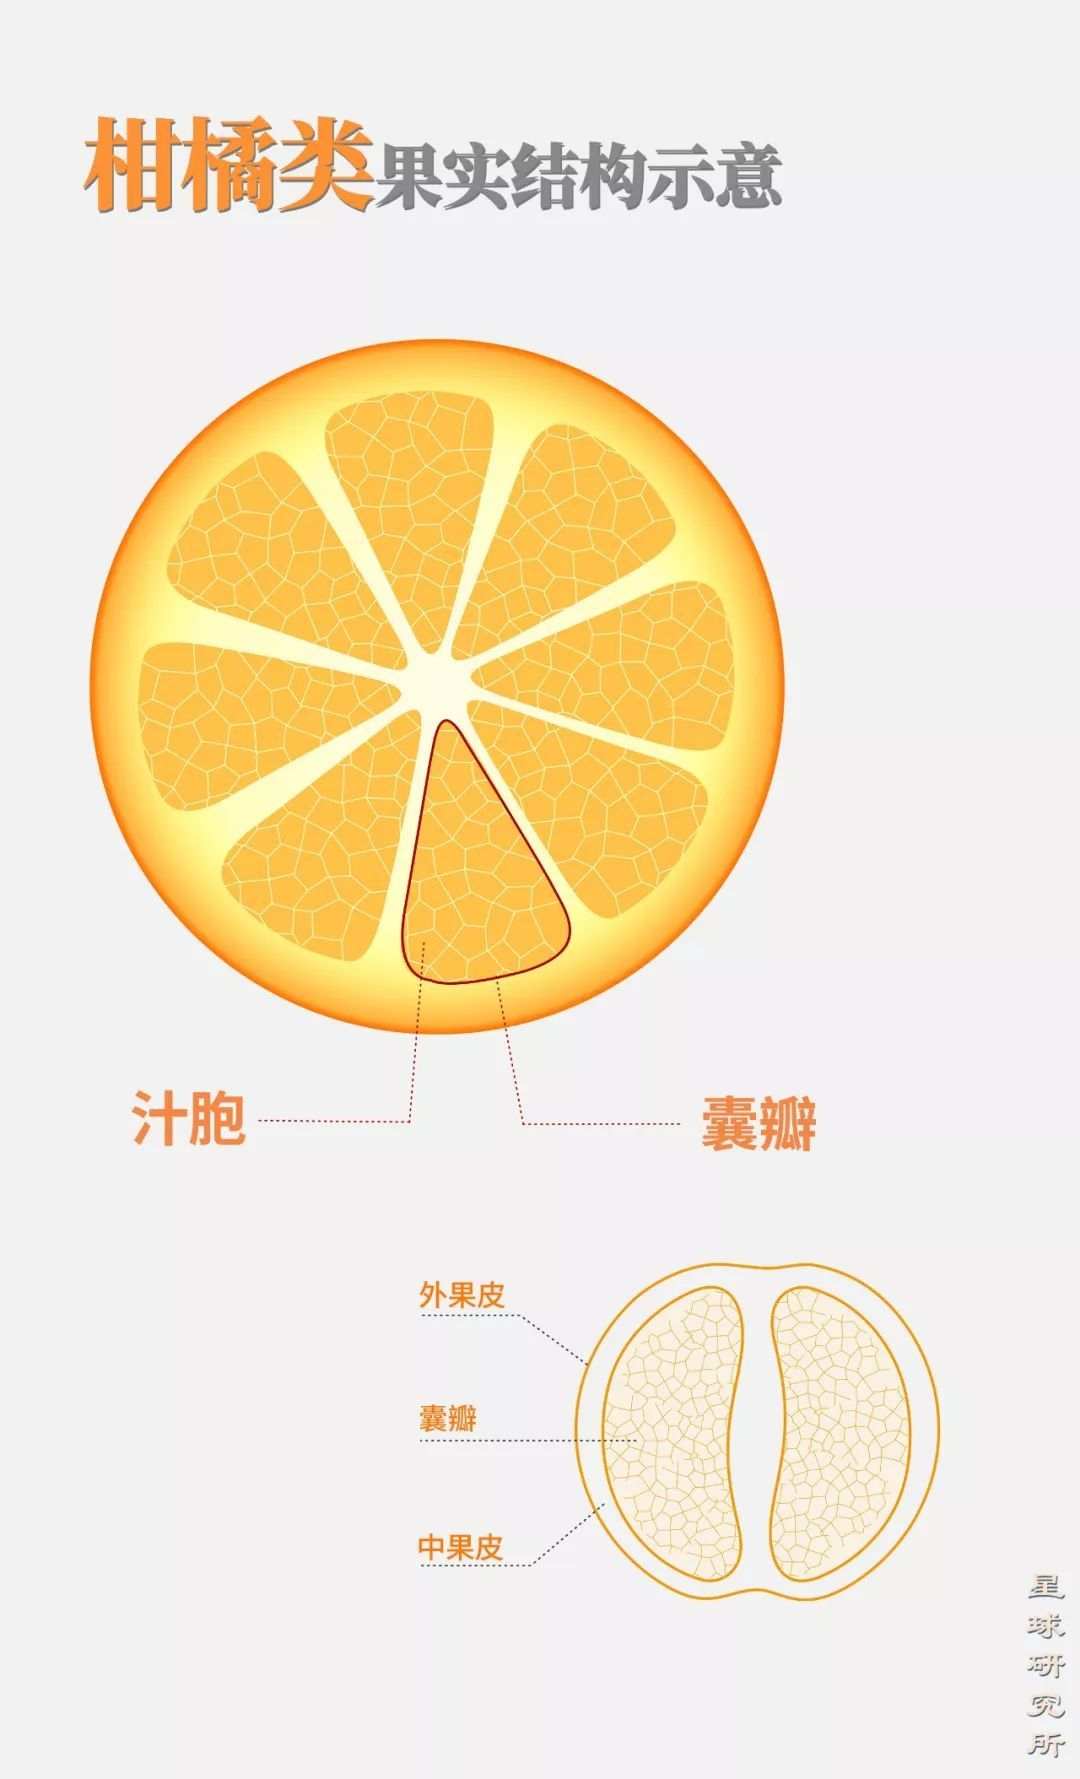 橘子有哪些组织构成图片